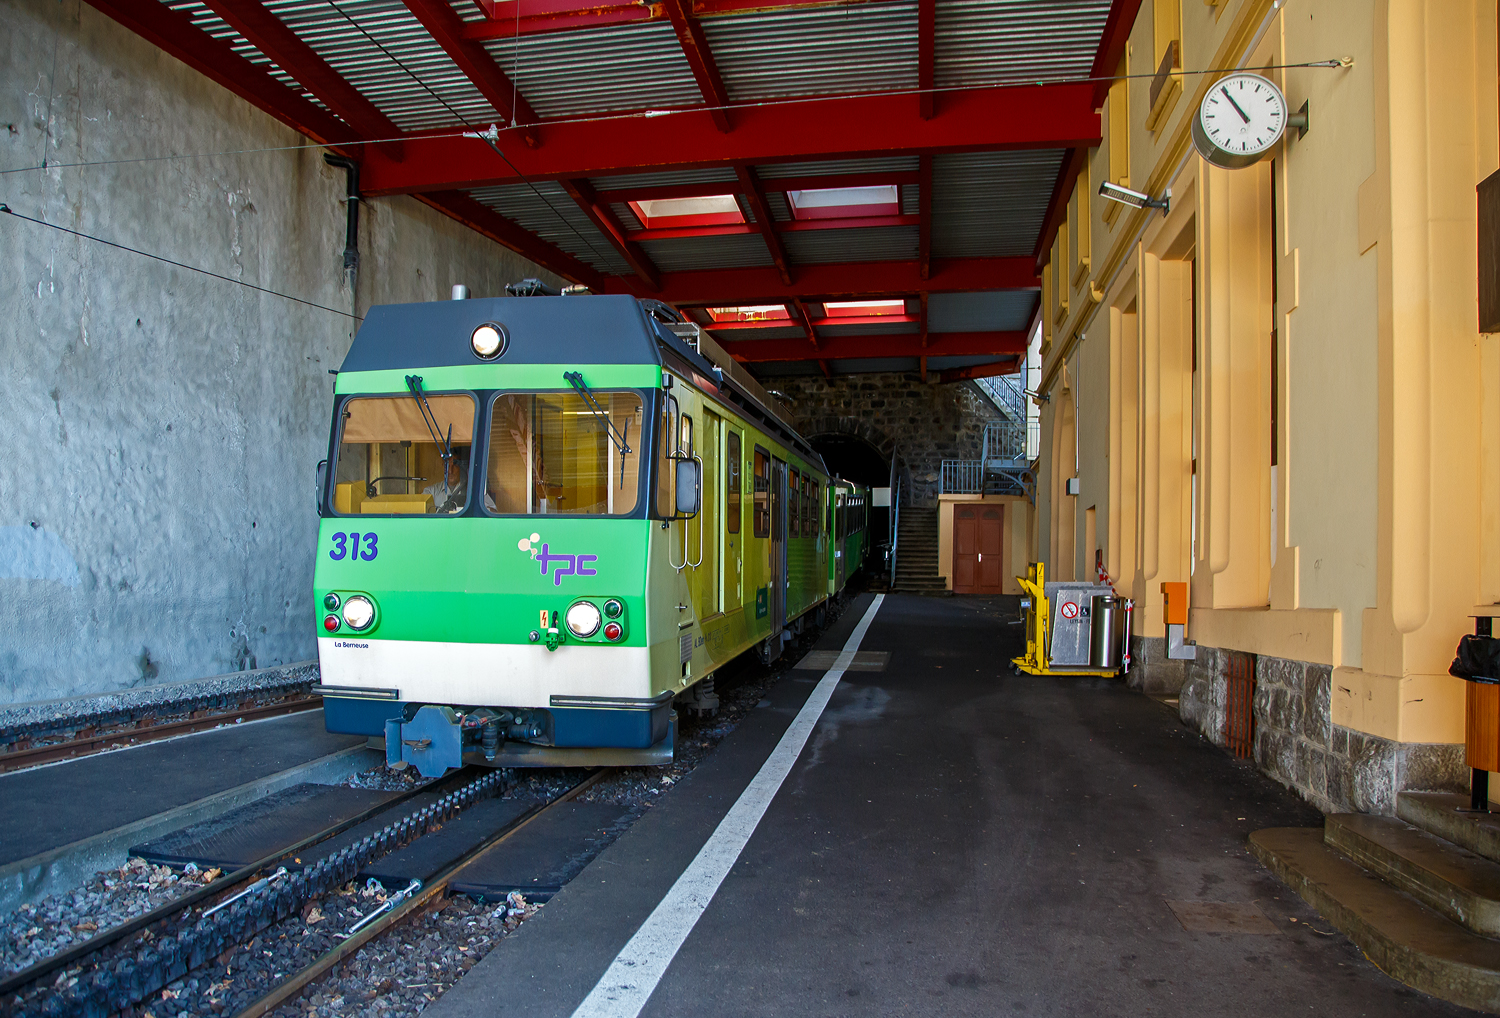 Der tpc AL BDeh 4/4 313 „La Berneuse“ (2. Klasse elektrischen Personentriebwagen mit Gepckabteil fr den gemischten Zahnrad- und Adhsionsbetrieb) mit den beiden AL Steuerwagen AL Bt 362 und AL Bt 363 kommt am 08 September 2023 vom Leysin - Grand-Htel hinab, verlsst gerade den 287 m langen Kehrtunnel Leysin und erreicht somit die Station Leysin-Feydey. Der dreiteilige Zug fhrt als Regionalzug (R 25) von Leysin - Grand-Htel nach Aigle.

Eine Einzelfahrkarte/Einzelbillett von Aigle nach Leysin - Grand-Htel (5 Zonen) kostet im Vollpreis 9,20 CHF/Person somit die Hin- und Rckfahrt (da vermutlich ber 2 Stunden) 18,40 CHF/Person. Wir hatten aber Glck (nicht nur mit dem wunderschnen Wetter), die tpc feierte 125 Jahre der BVB an dem Wochenende, so bekamen wir Tageskaten frs ganze Netz der TPC fr 10,- CHF/Person. Die drei TPC-Strecken ab Aigle (AL, ASD und AOMC) konnten wir so gut an einem Tag erkunden bzw. erfahren. Fr die 12,4 Kilometer lange Strecke von Bex nach Villars-sur-Ollon der BVB (Bex–Villars–Bretaye) brauchten wir dann einen ganzen weiteren Tag, den man auch einrechnen sollt.

Erklrung der verwendeten Abkrzungen:
tpc = Tansports Publics du Chablais
AL = Chemin de fer Aigle–Leysin (Aigle-Leysin-Bahn)
ASD = Aigle–Spey–Diablerets
AOMC = Aigle–Ollon–Monthey–Champry
BVB = Chemin de fer Bex–Villars–Bretaye